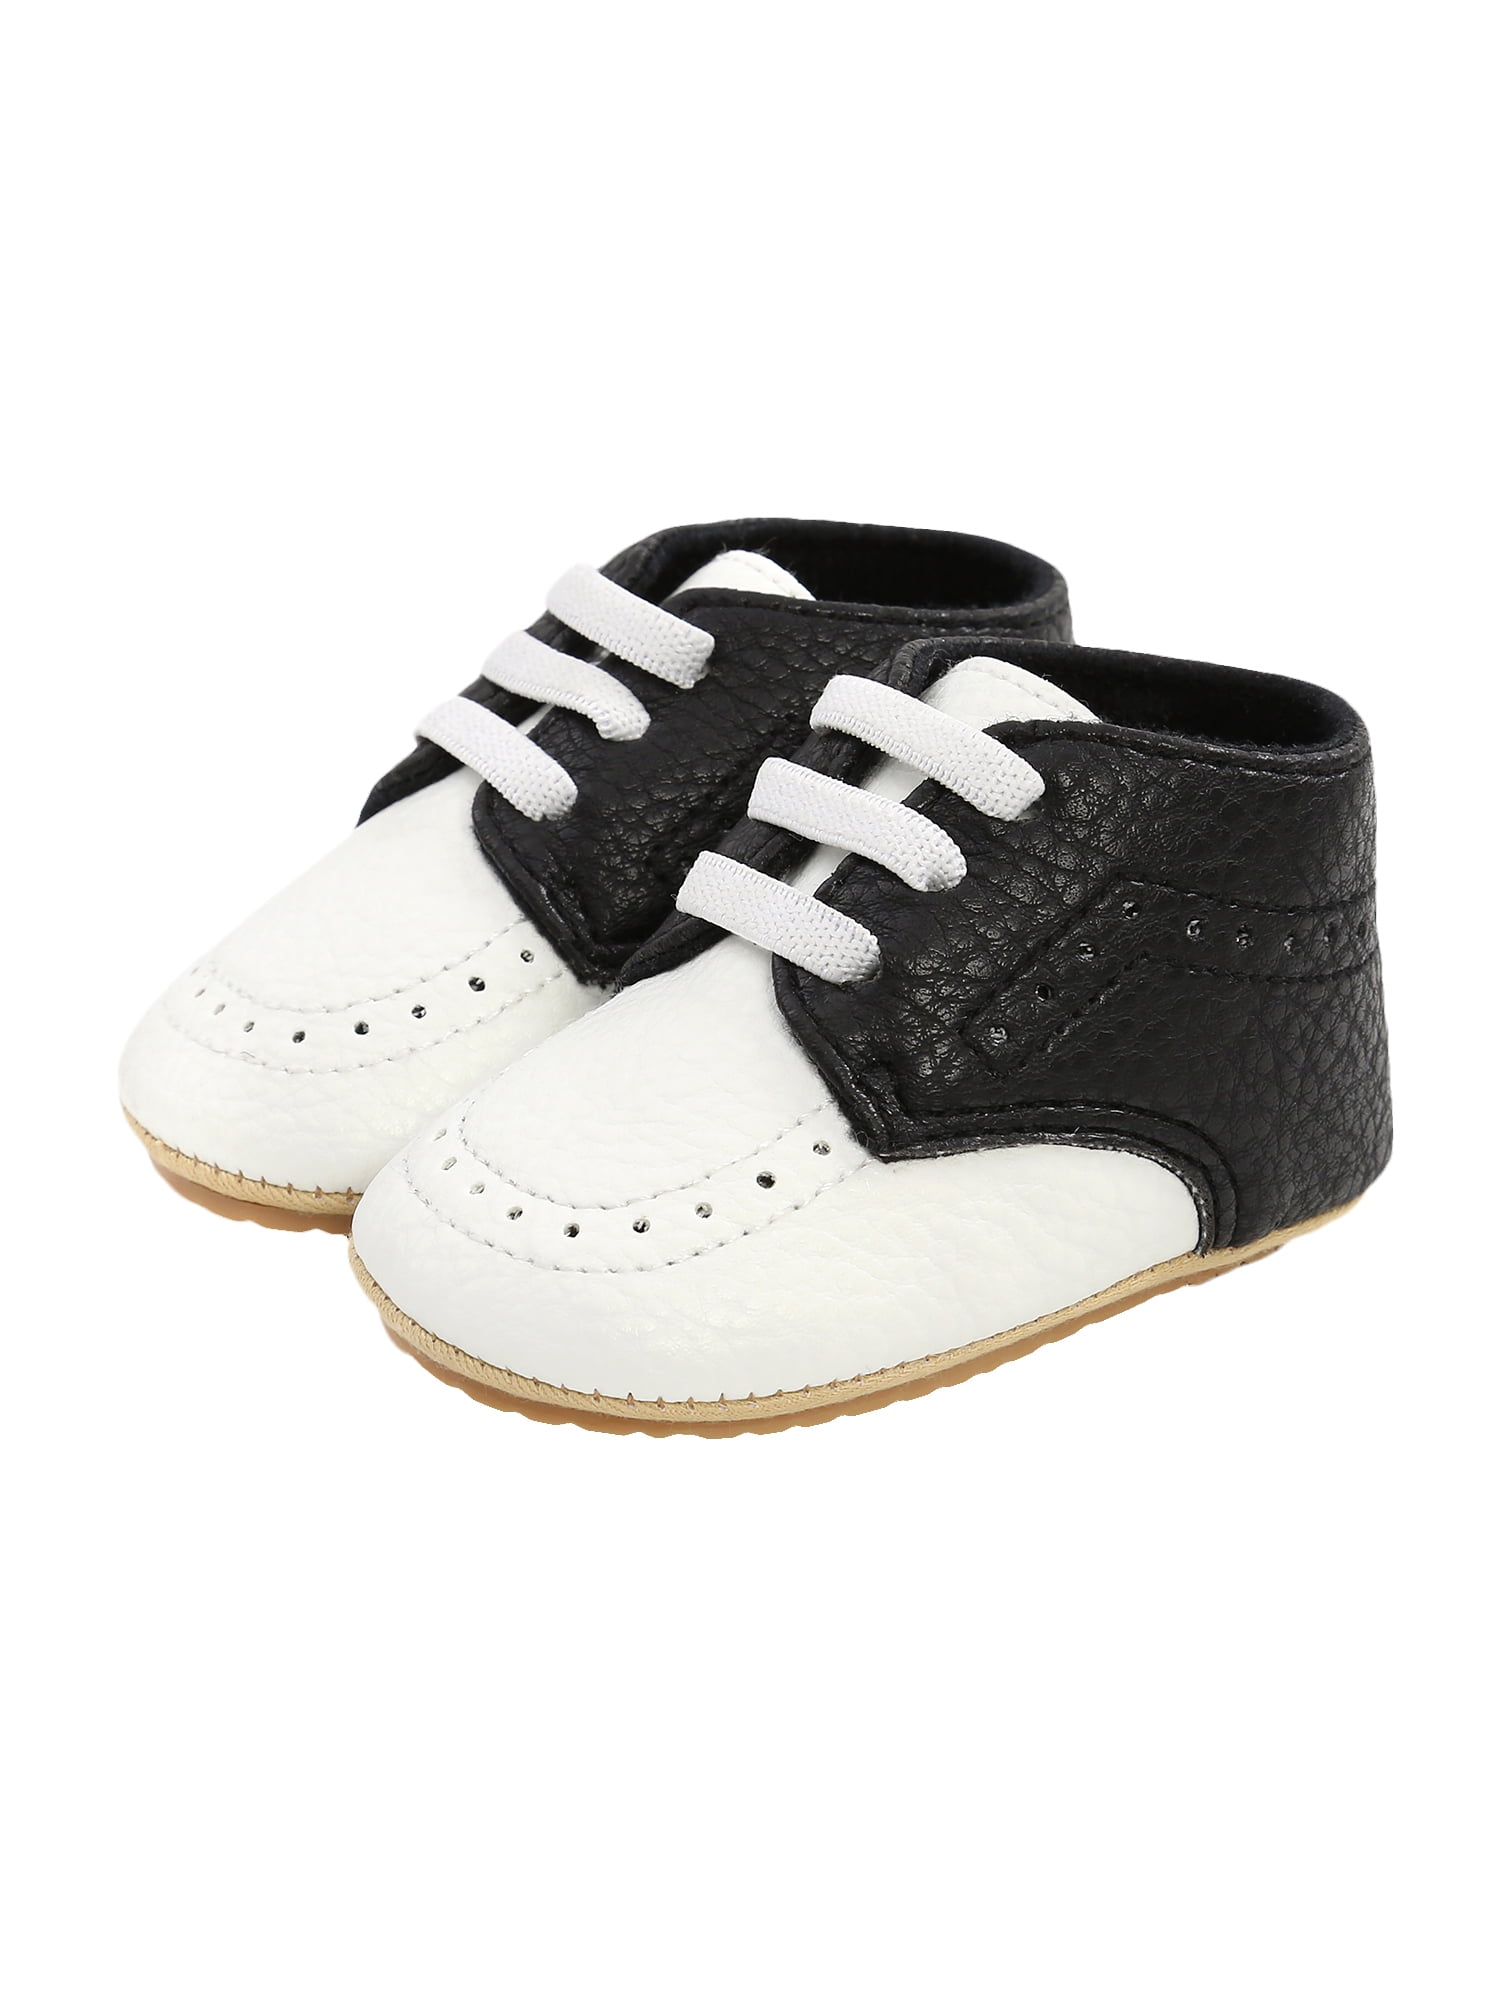 Jinwood SoftSole Leather Baby Infant Kid ClassicBlack Shoe 6-12M Littleoneshoes 